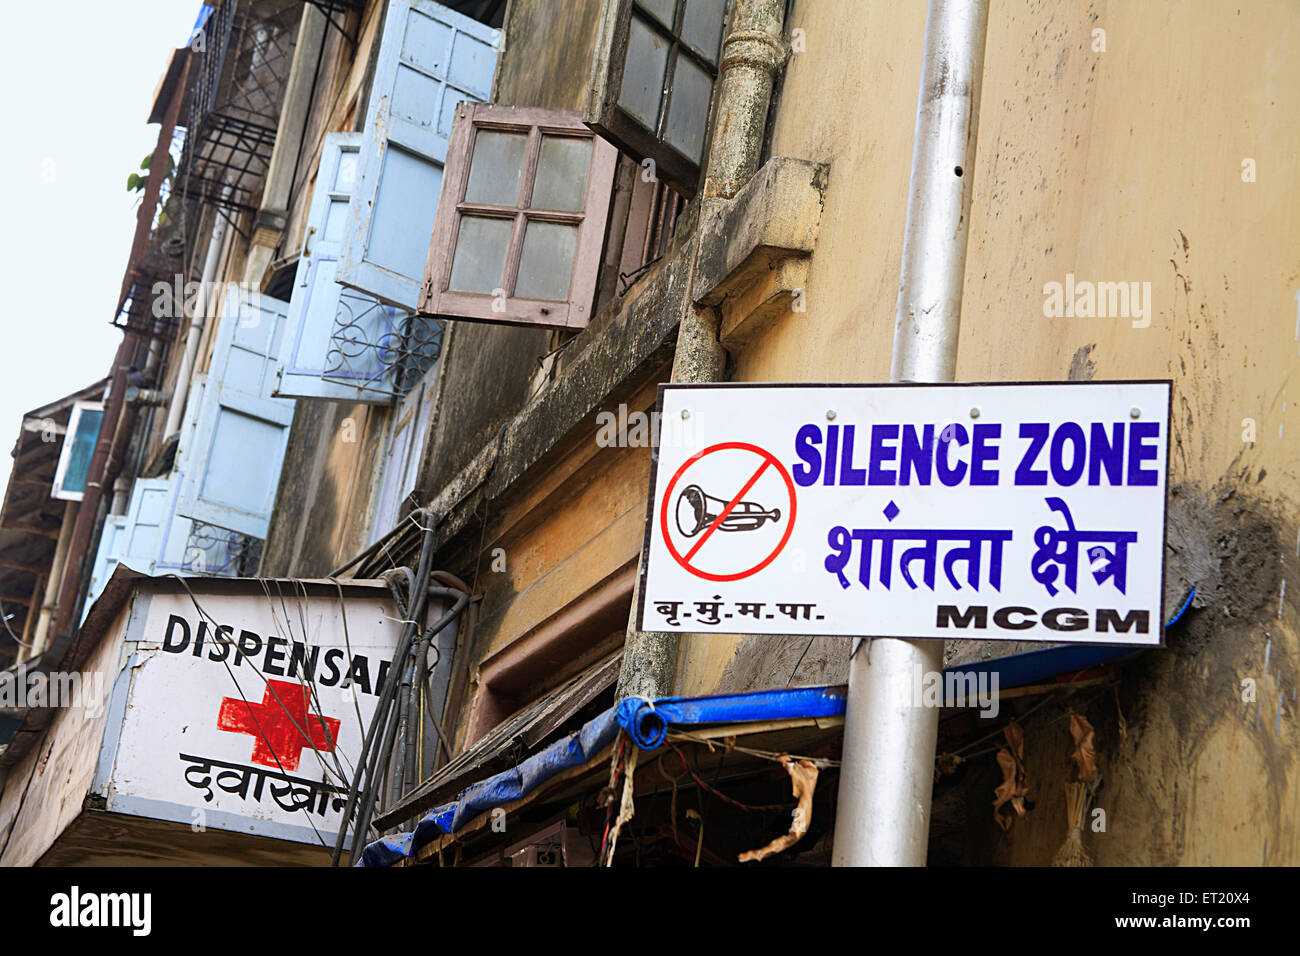 Dispensary and silence zone sign, Bombay, Mumbai, Maharashtra, India, Asia, Asian, Indian Stock Photo